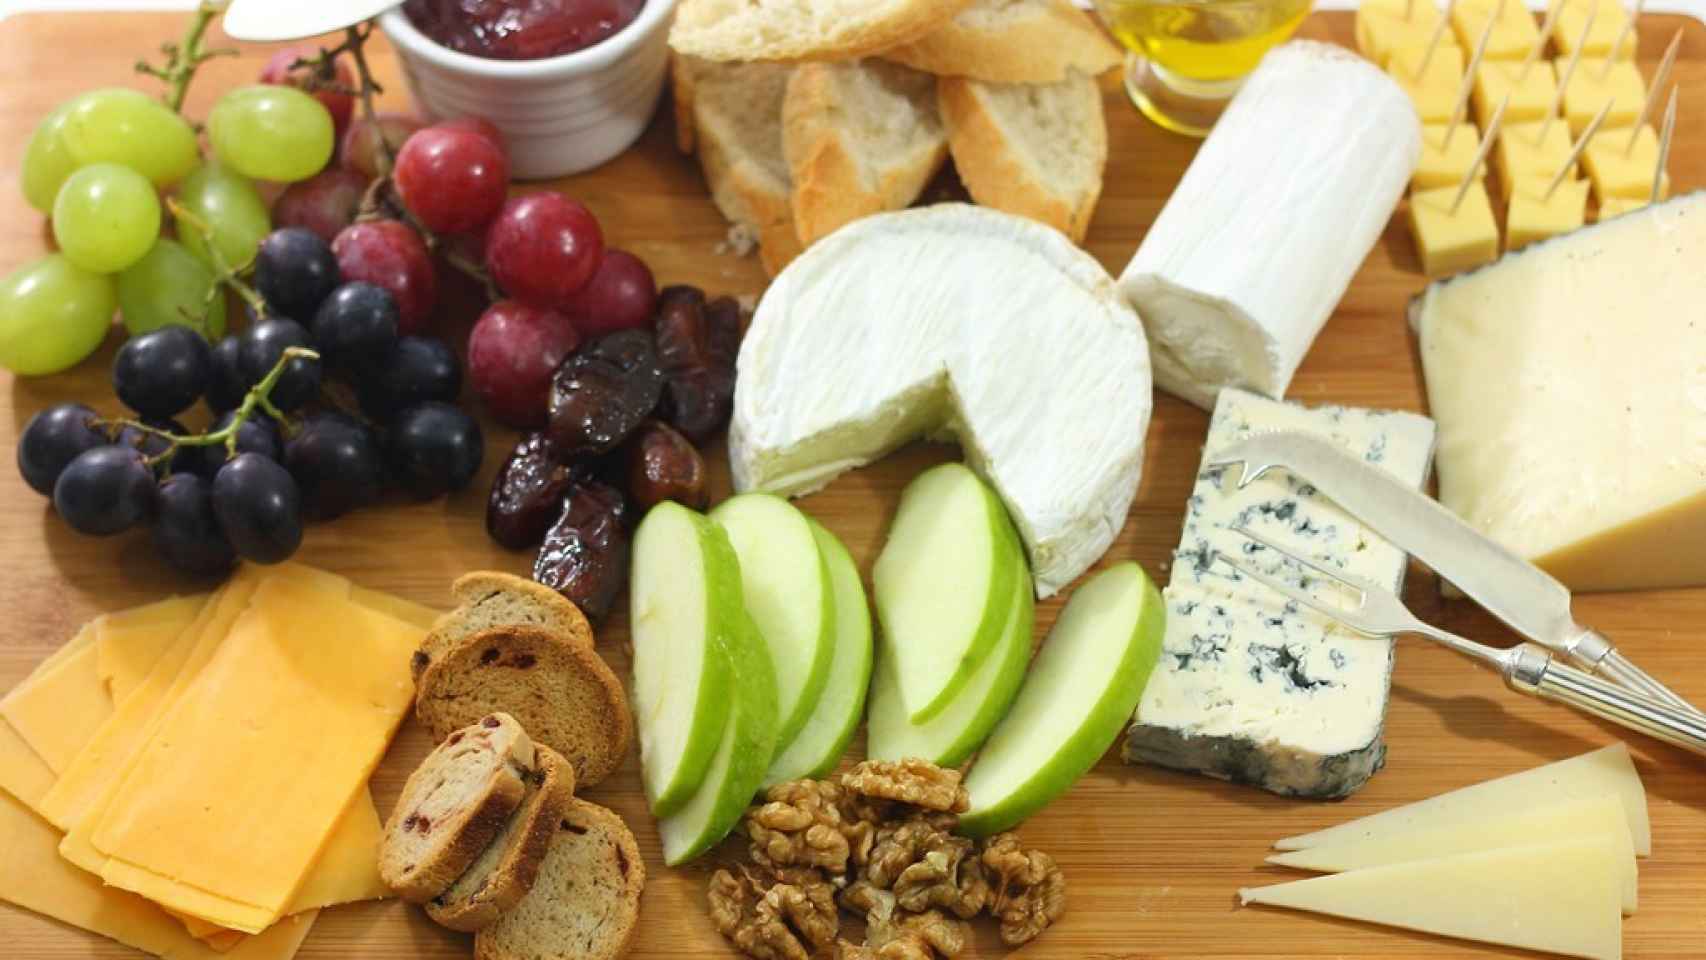 Tabla de quesos, un aperitivo original - Lácteos Segarra